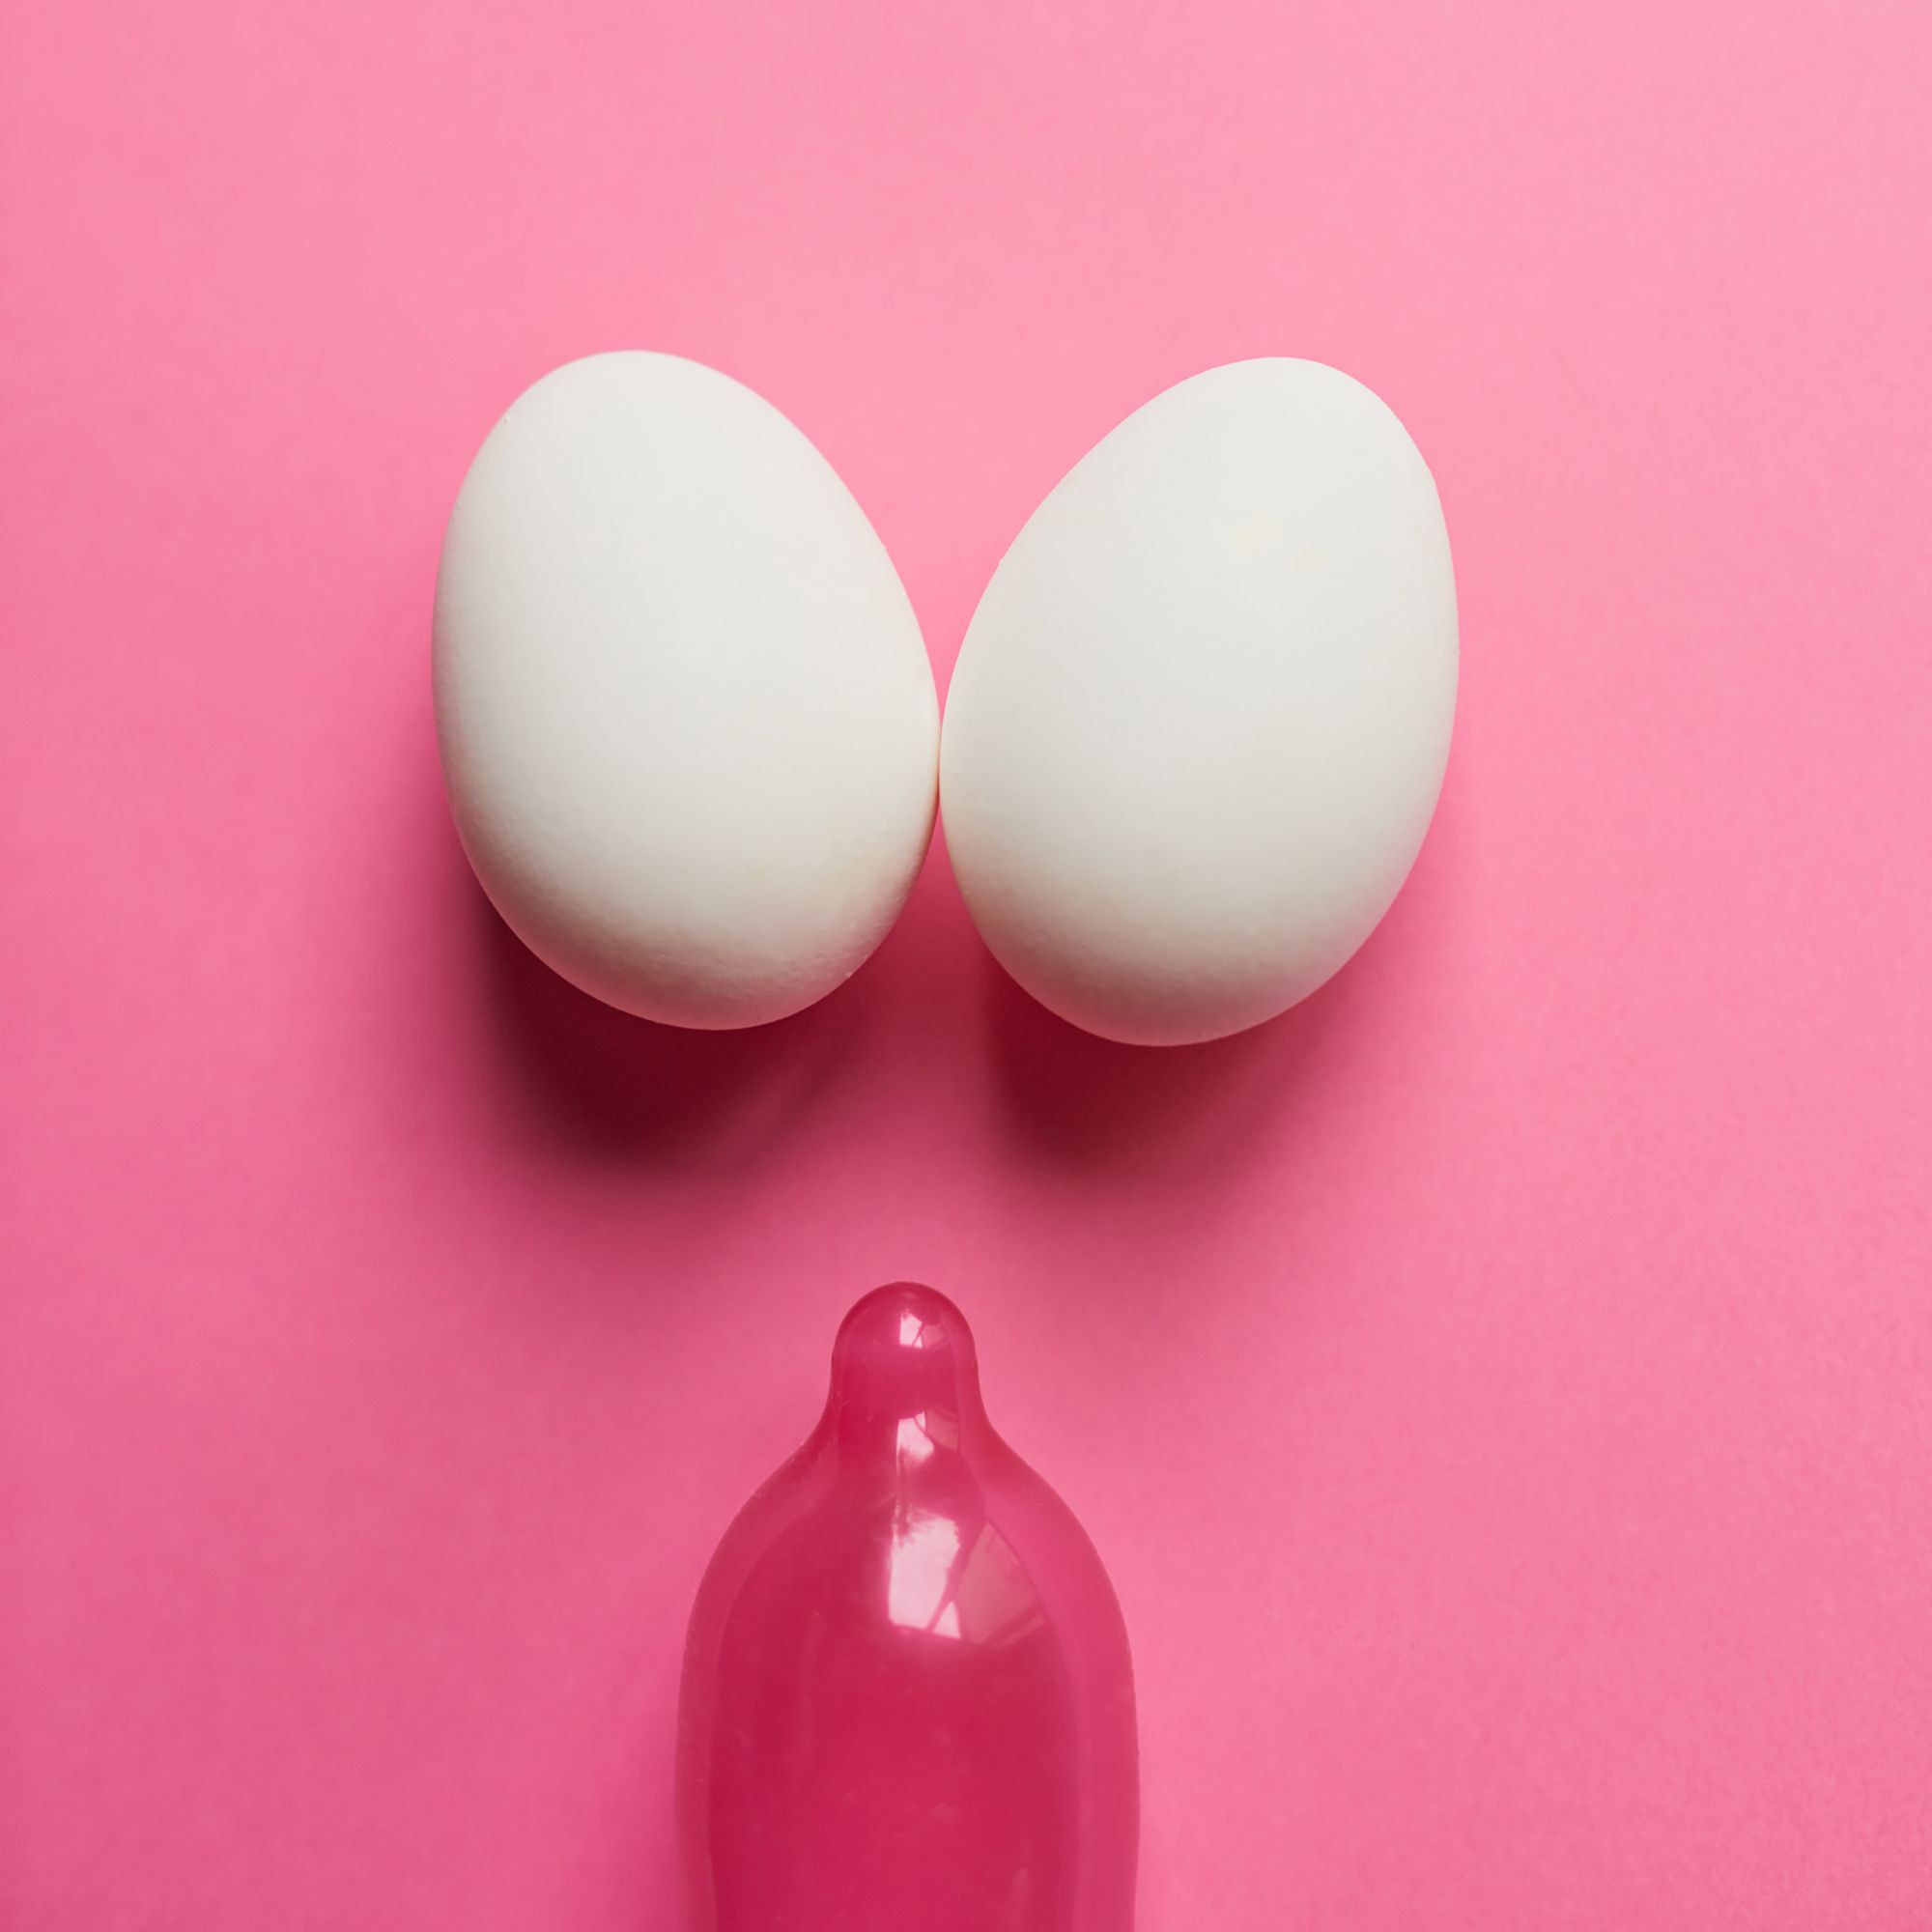 Zwei Eier und ein Kondom vor einem pinken Hintergrund